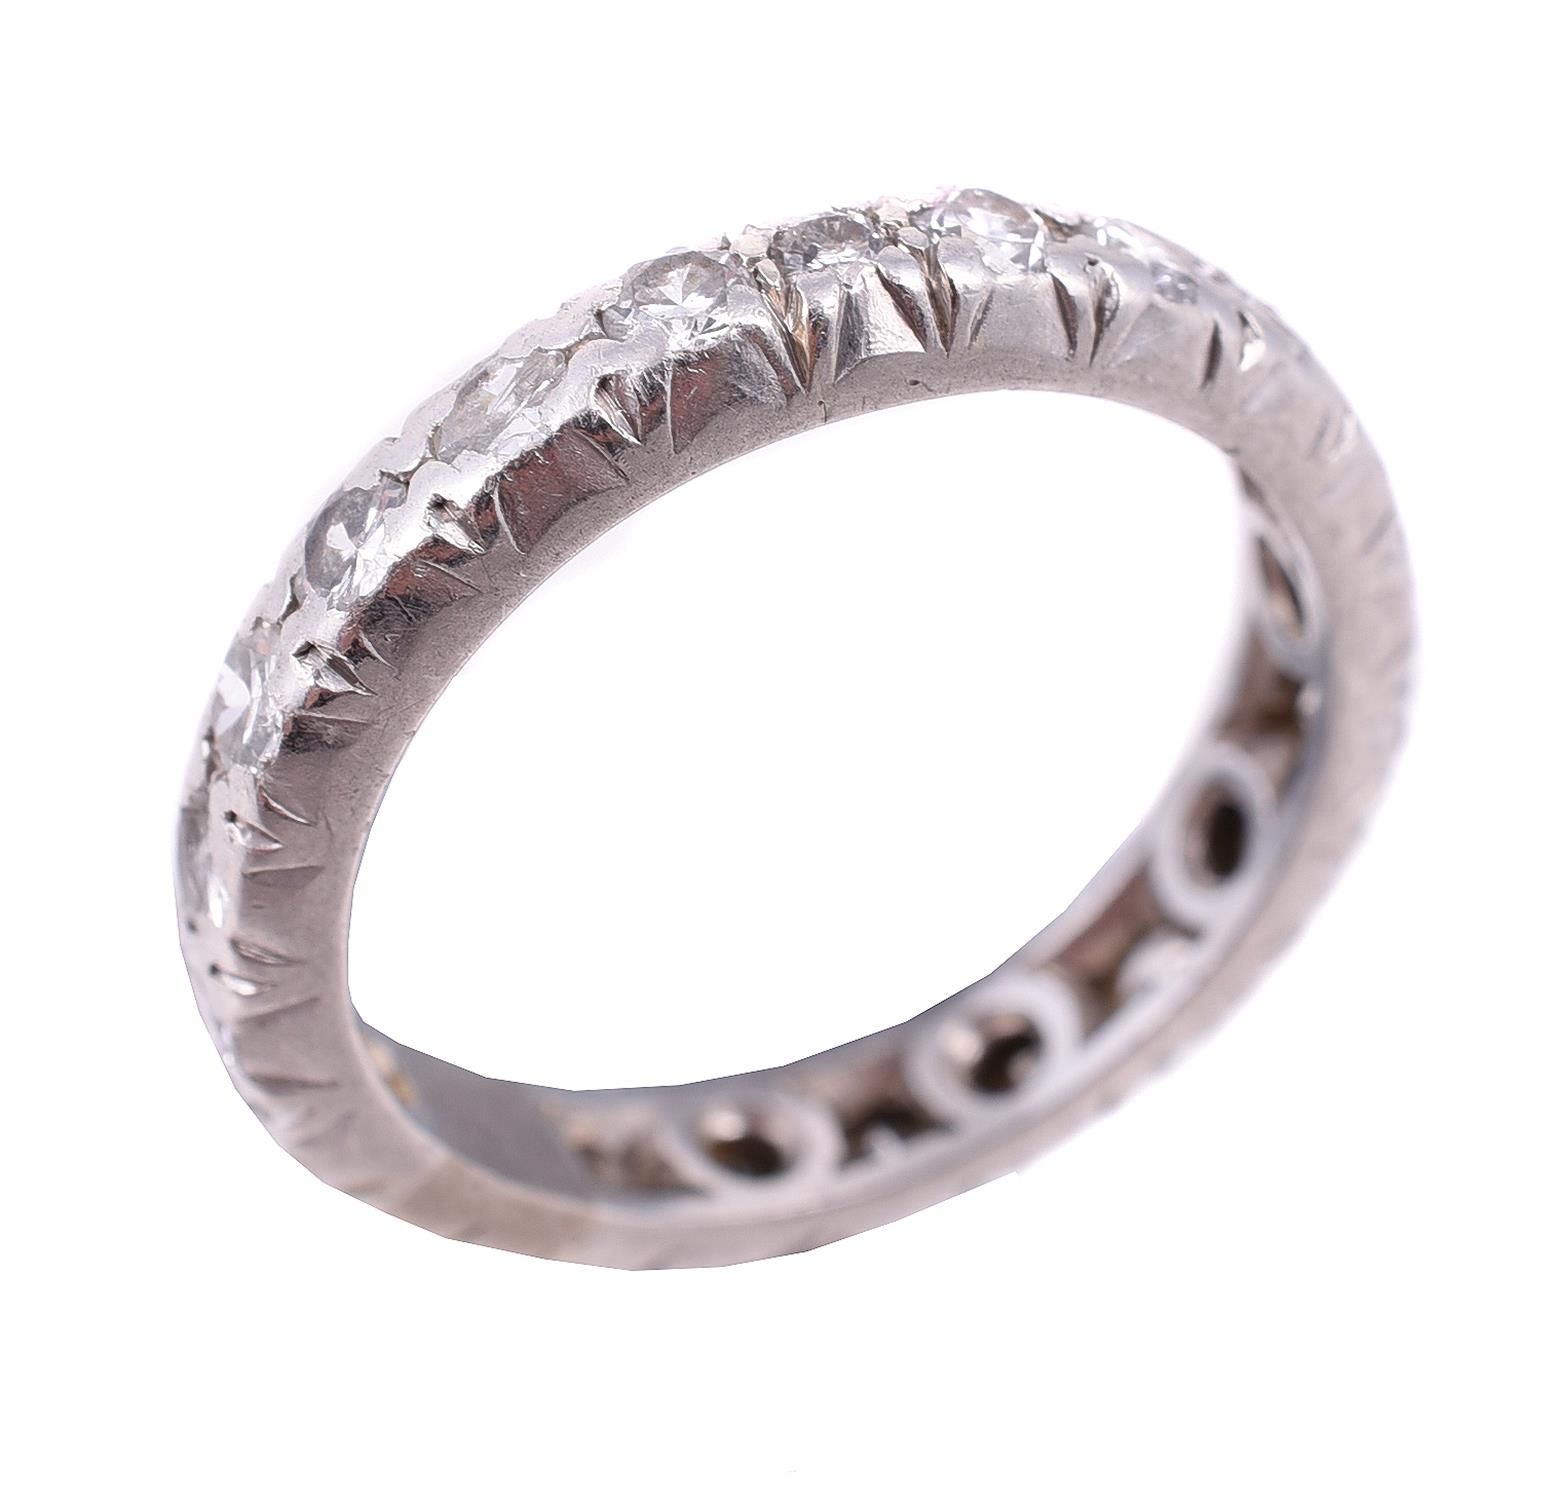 A diamond eternity ring 一枚永恒的钻石戒指，戒托上镶嵌着明亮式切割的钻石，共约1克拉，手指尺寸为N，总重5.5克。